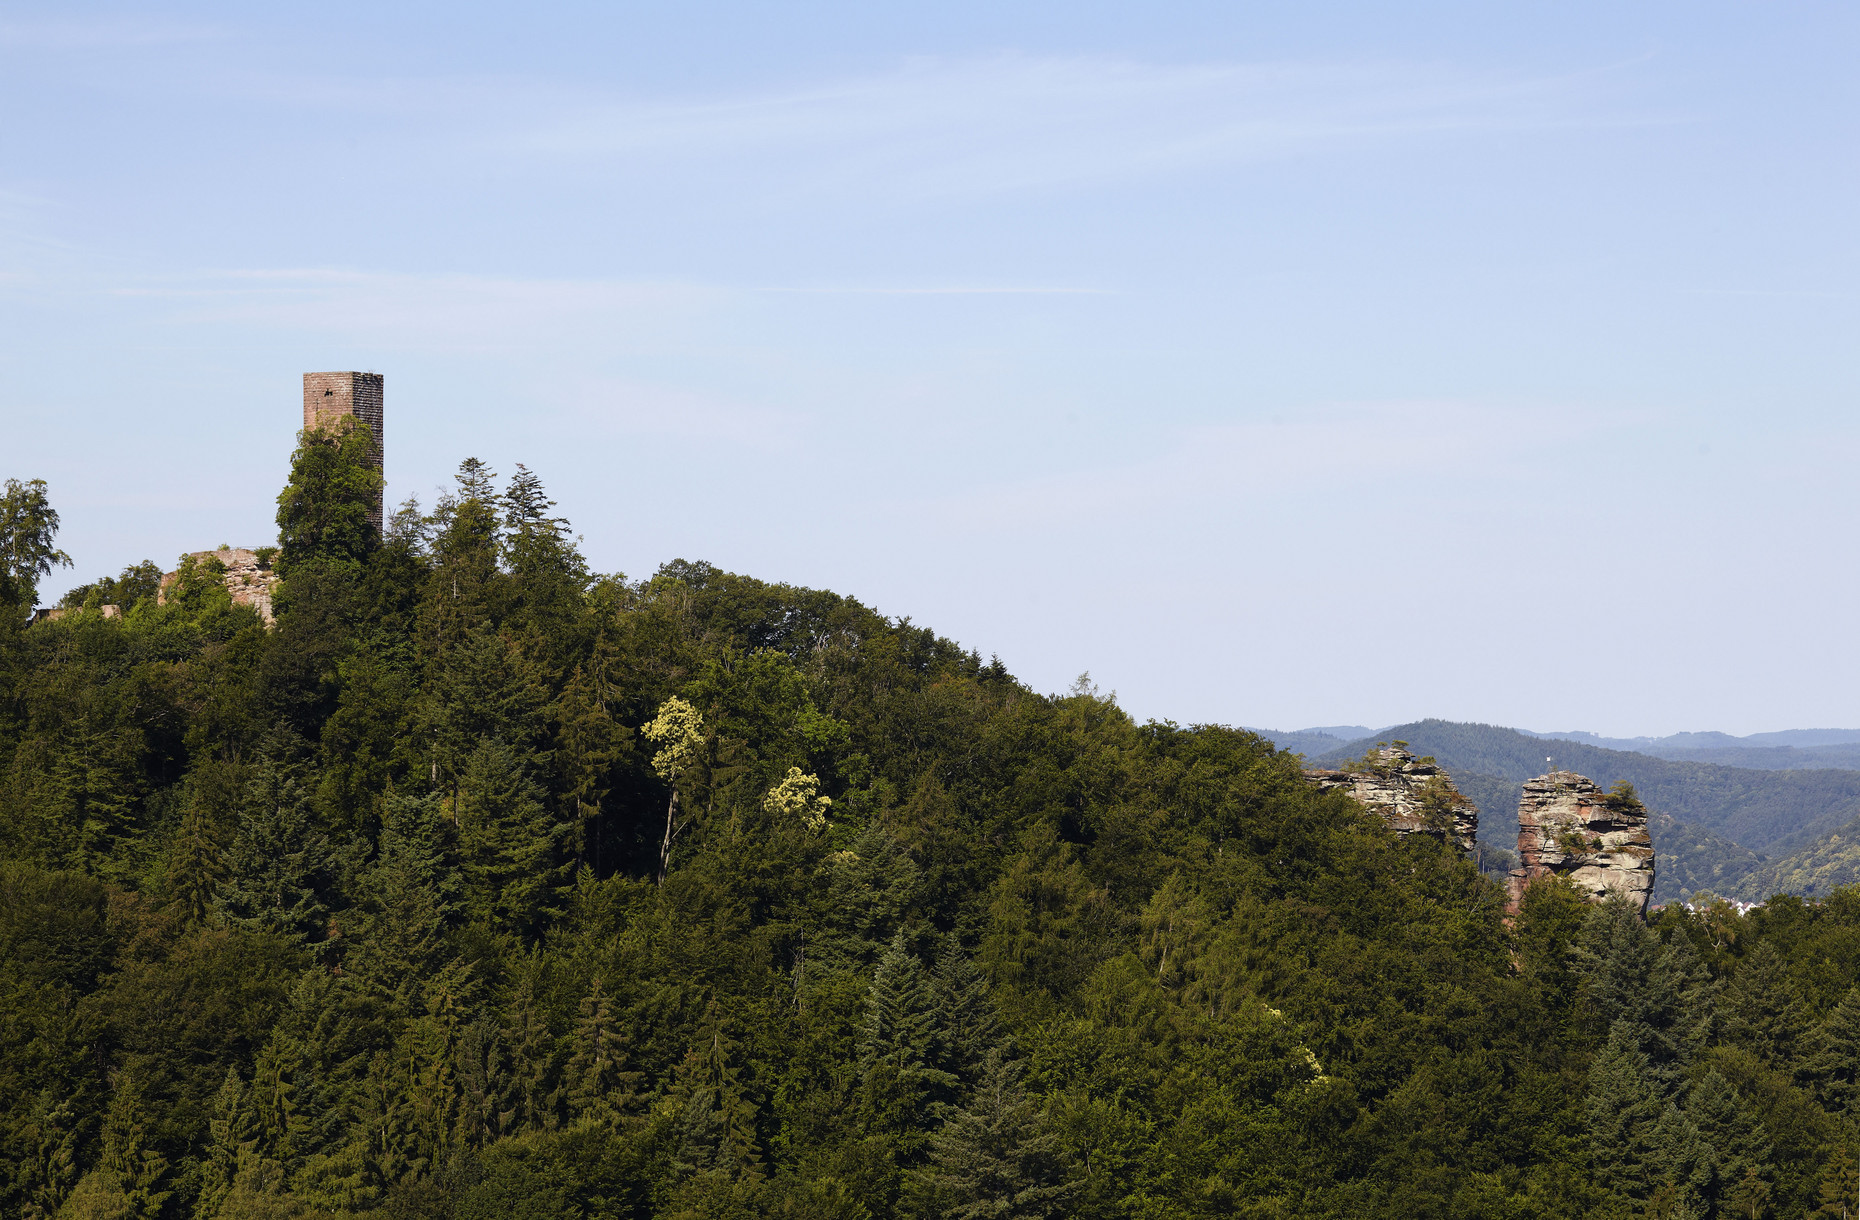 Rechteckiger Turm, der auf einem Hügel umgeben von Wald steht